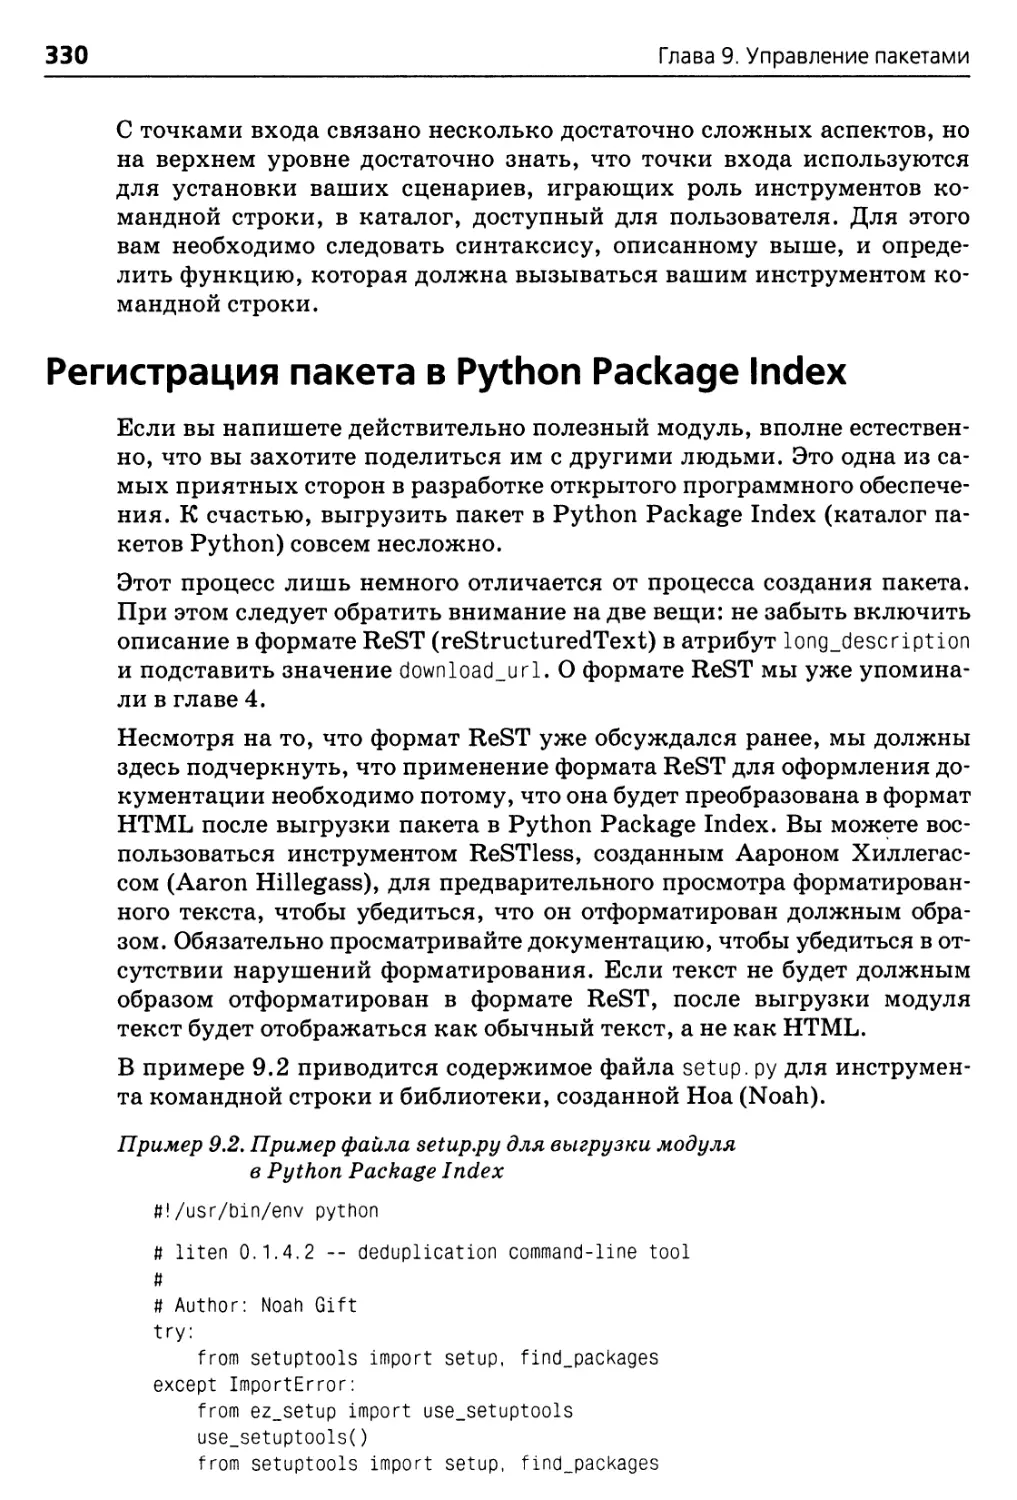 Регистрация пакета в Python Package Index